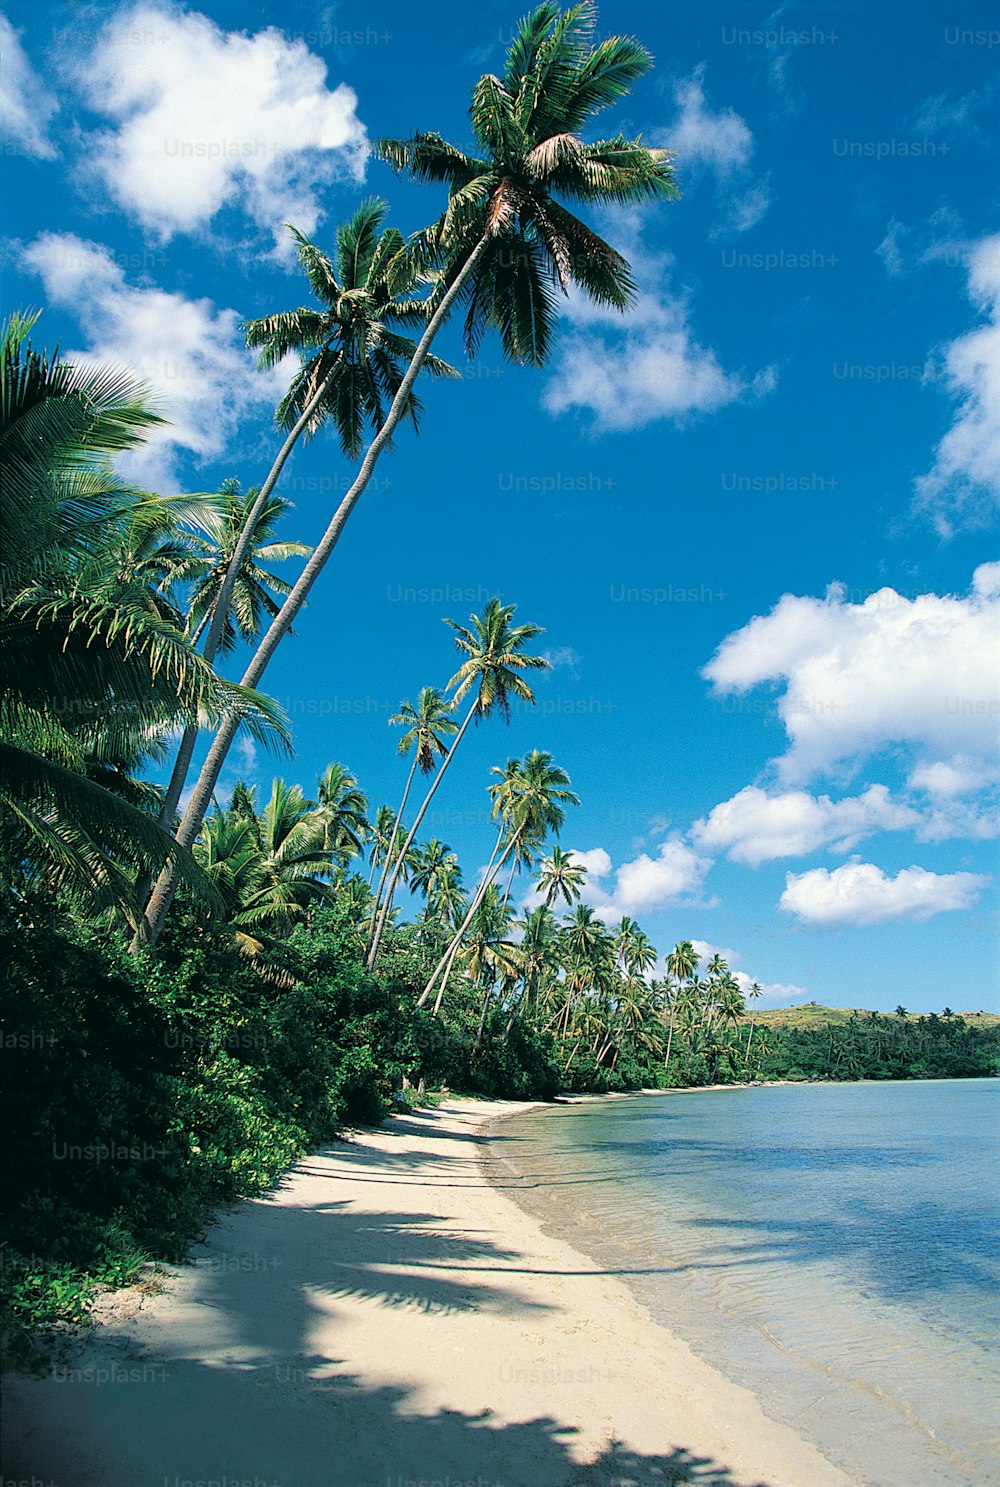 une plage de sable avec des palmiers et de l’eau